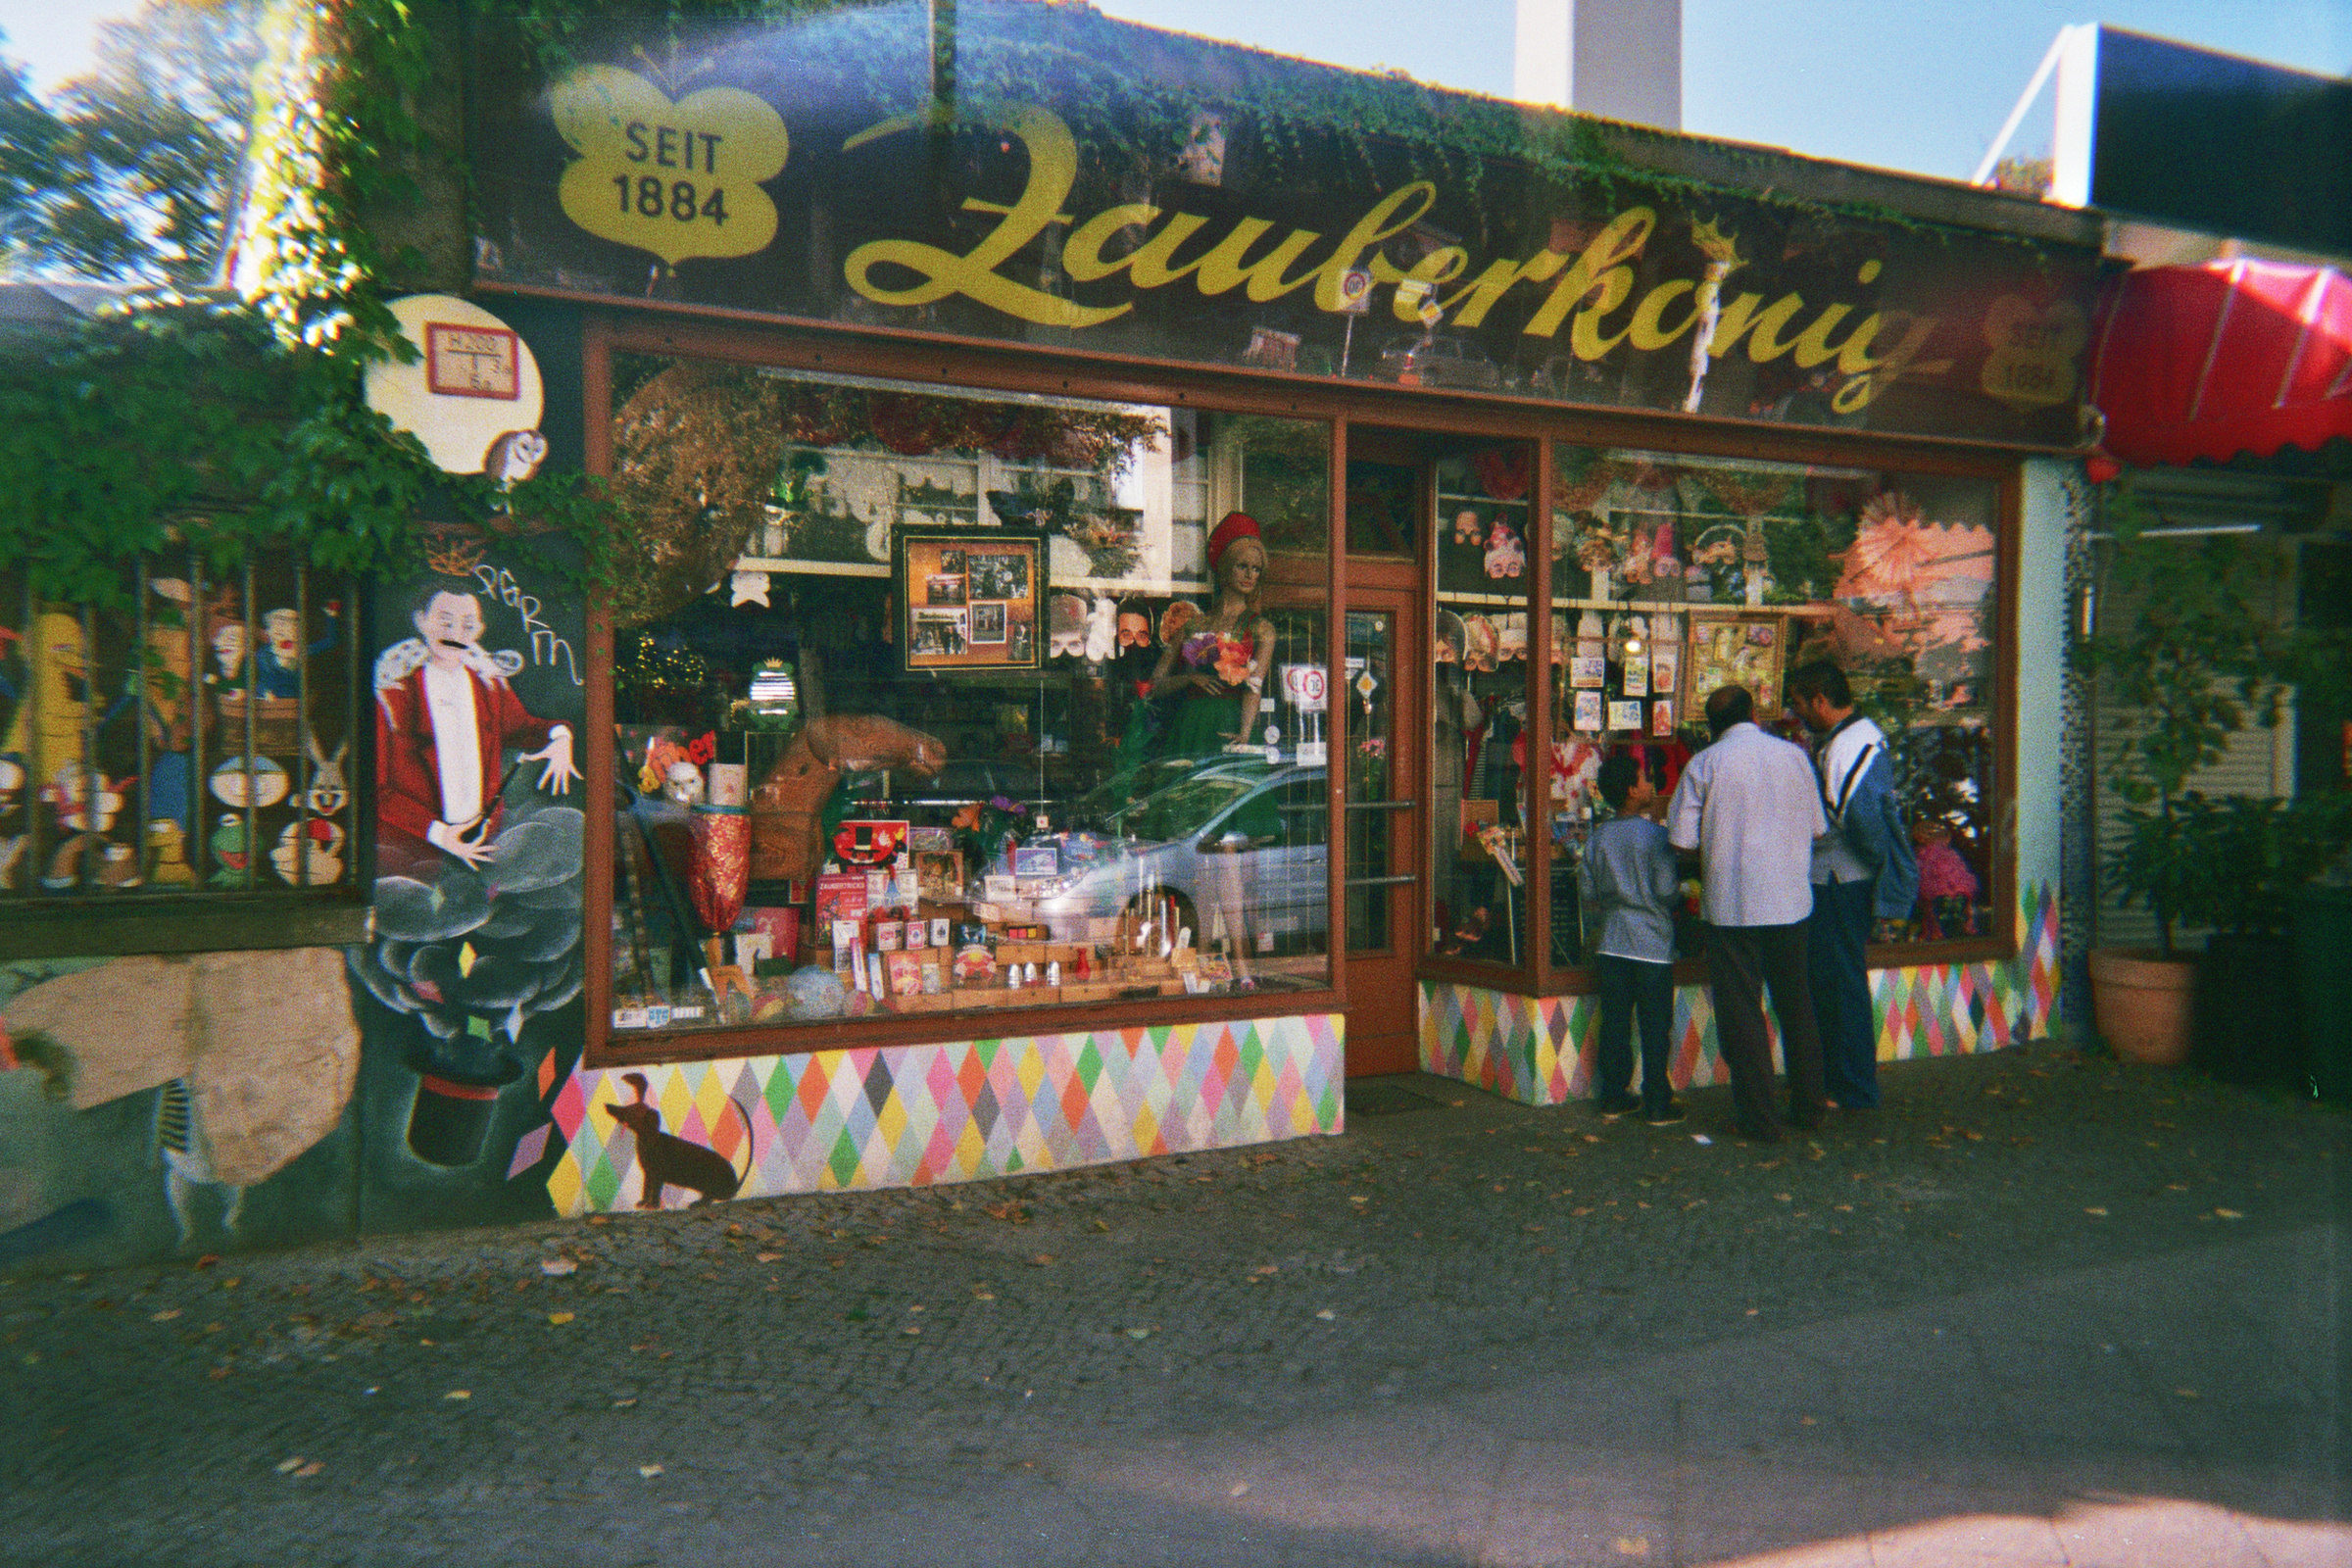 Farbfoto: Blick auf das Geschäft ZAUBERKOENIG in der Hermannstraße. Im Bezirk Neukölln in Berlin im Oktober des Jahres 2014. Foto: Erwin Thomasius.